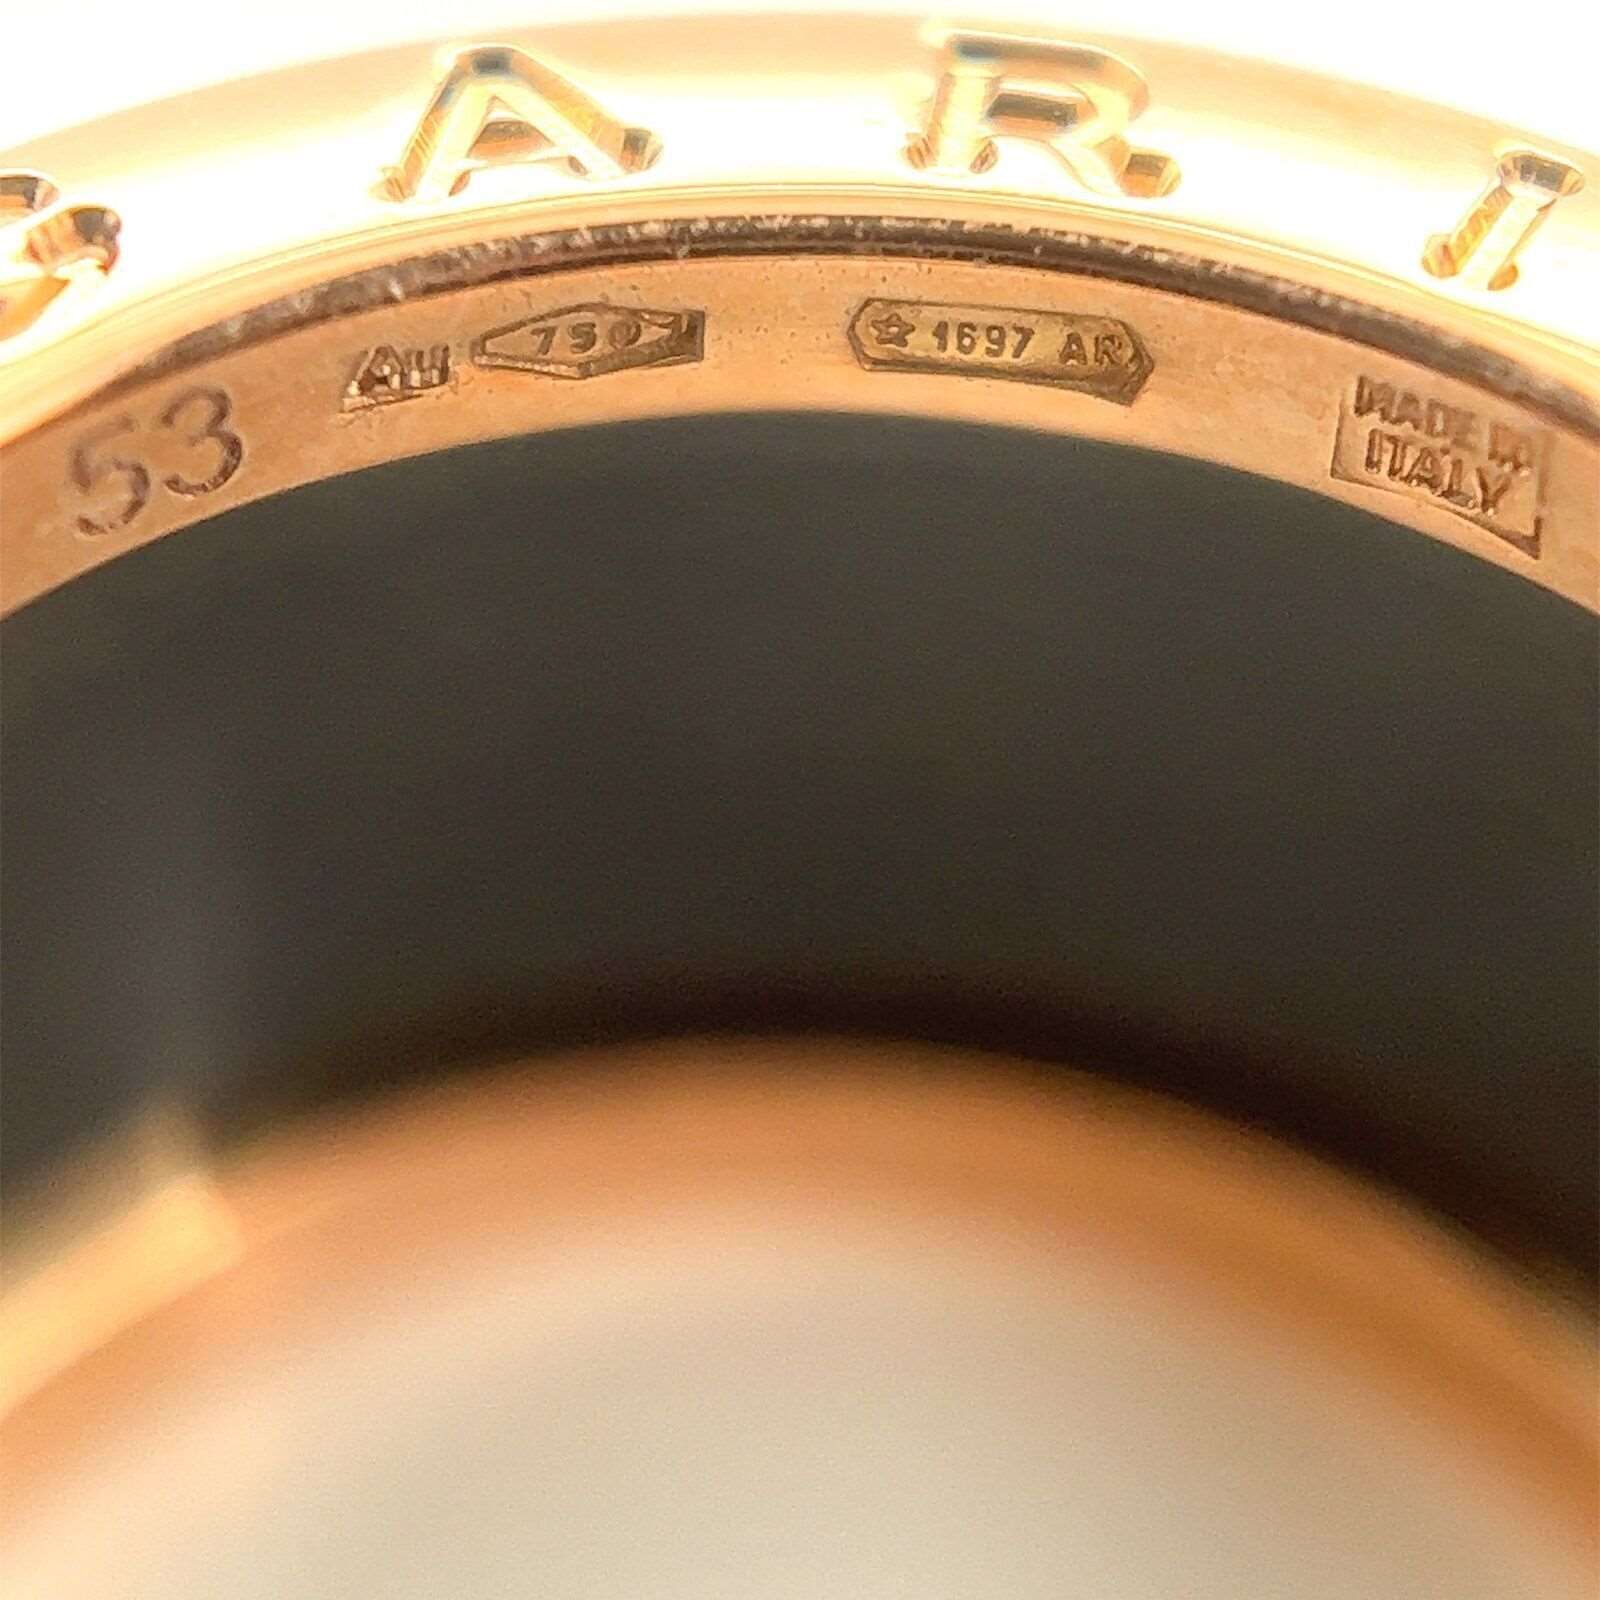 Bvlgari B.zero1 Four-Band Ring in 18k Rose Gold & Black Ceramic